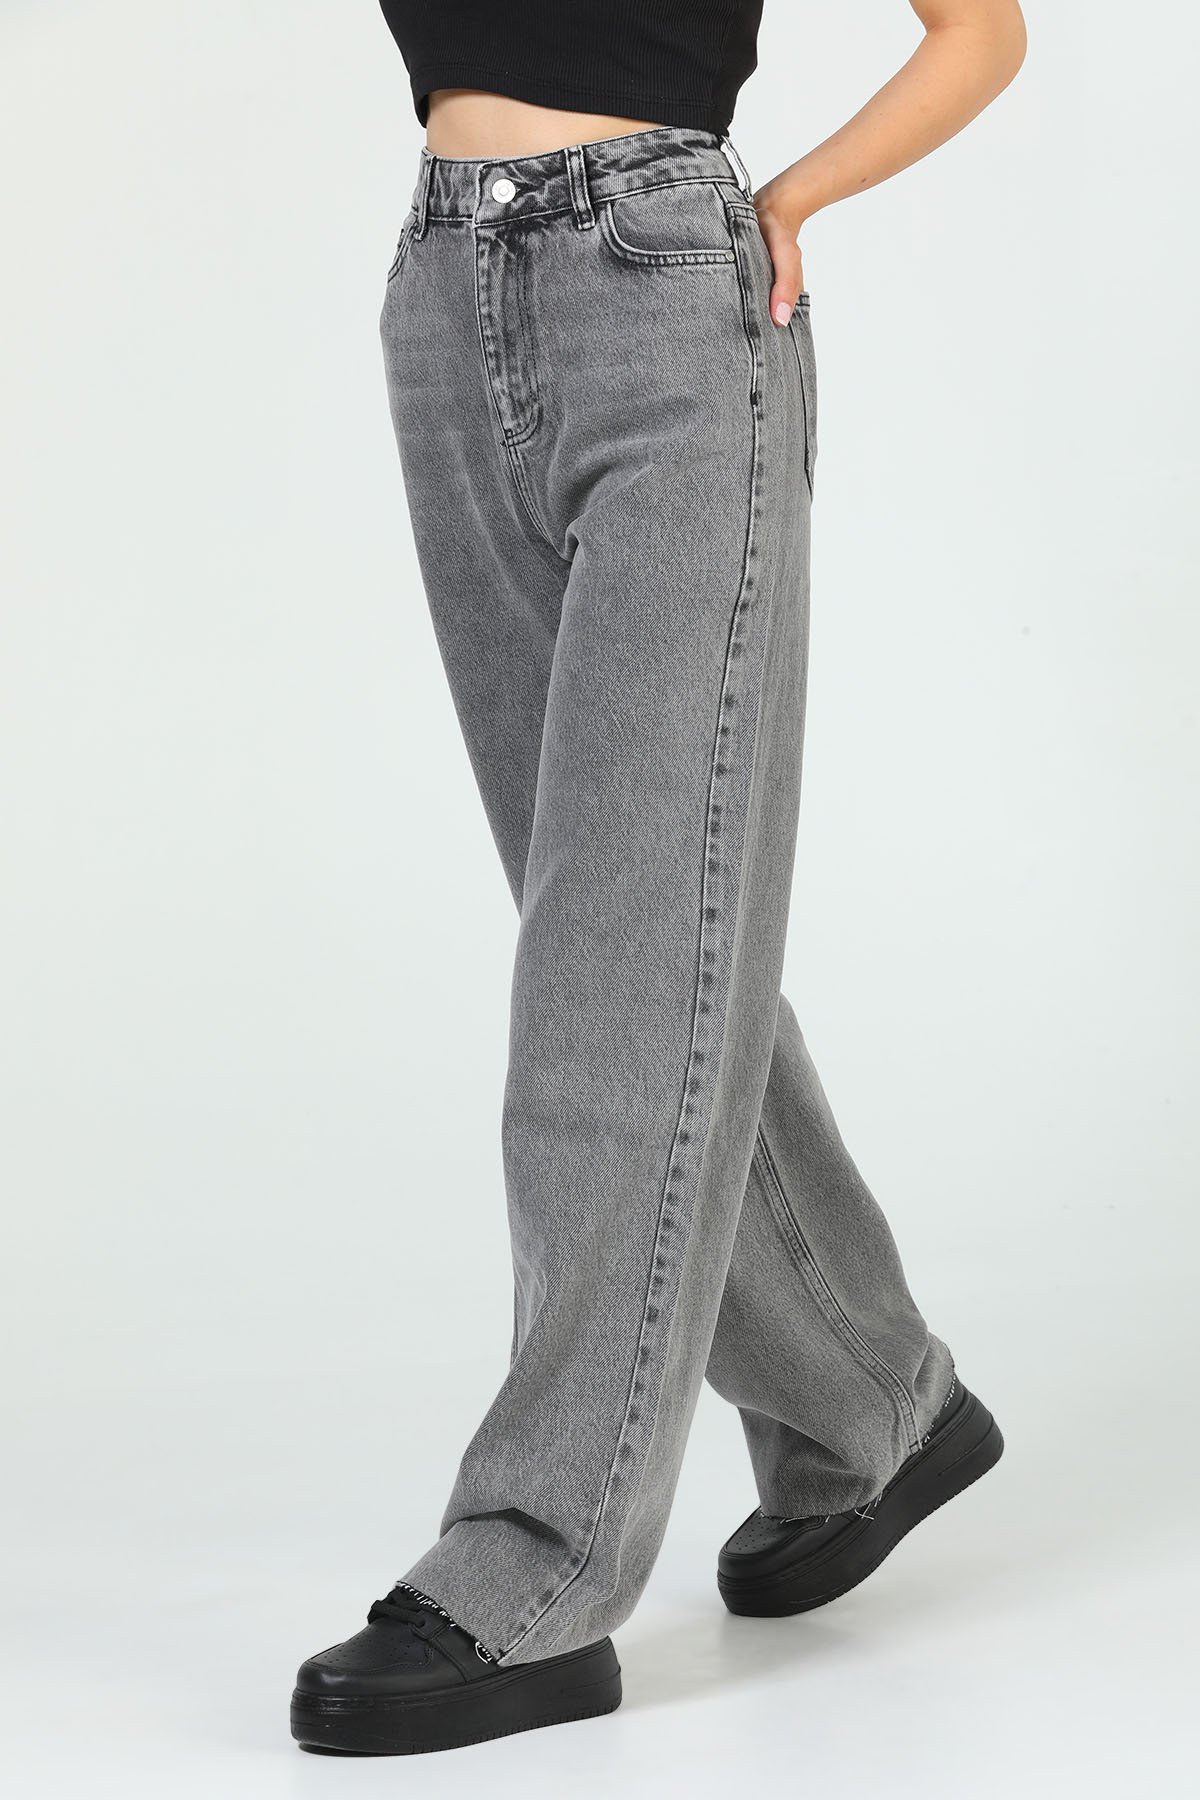 Kadın Yüksek Bel Bol Paça Jeans Pantolon Gri 503211 - tozlu.com